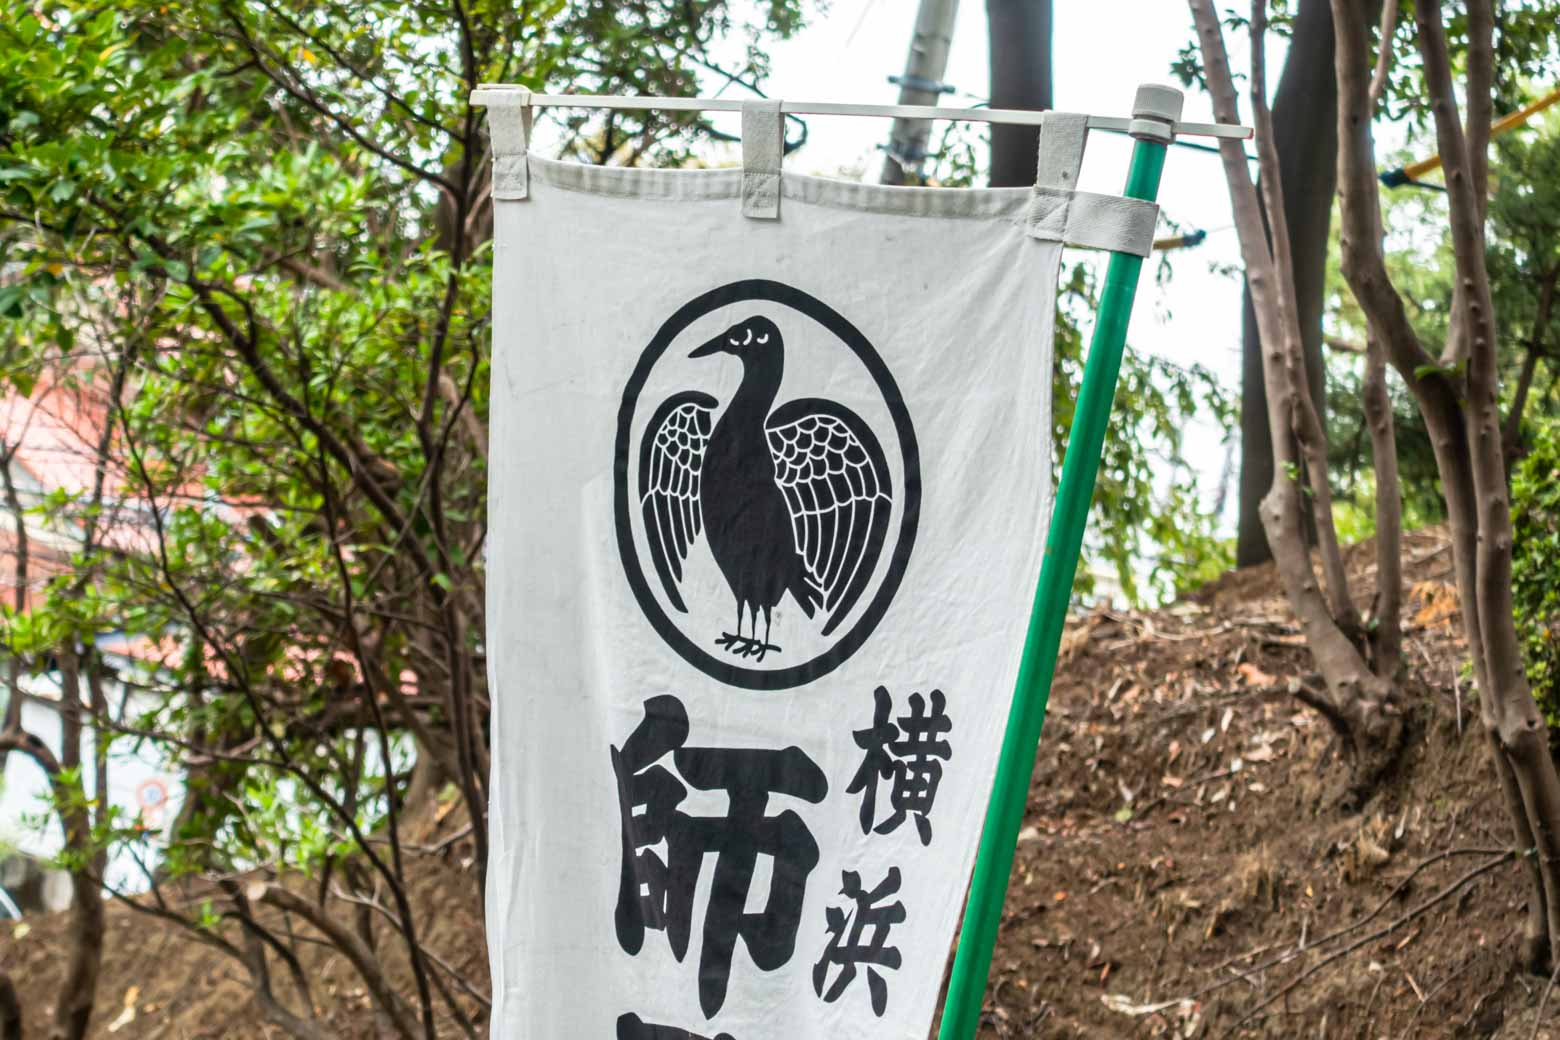 御社紋（神社の紋章）は八咫烏（やたがらす。三本脚のカラスで、神の使いとされている）。日本サッカー協会のエンブレムと同じということで、多くのサッカーファンが勝利祈願に訪れているとか。